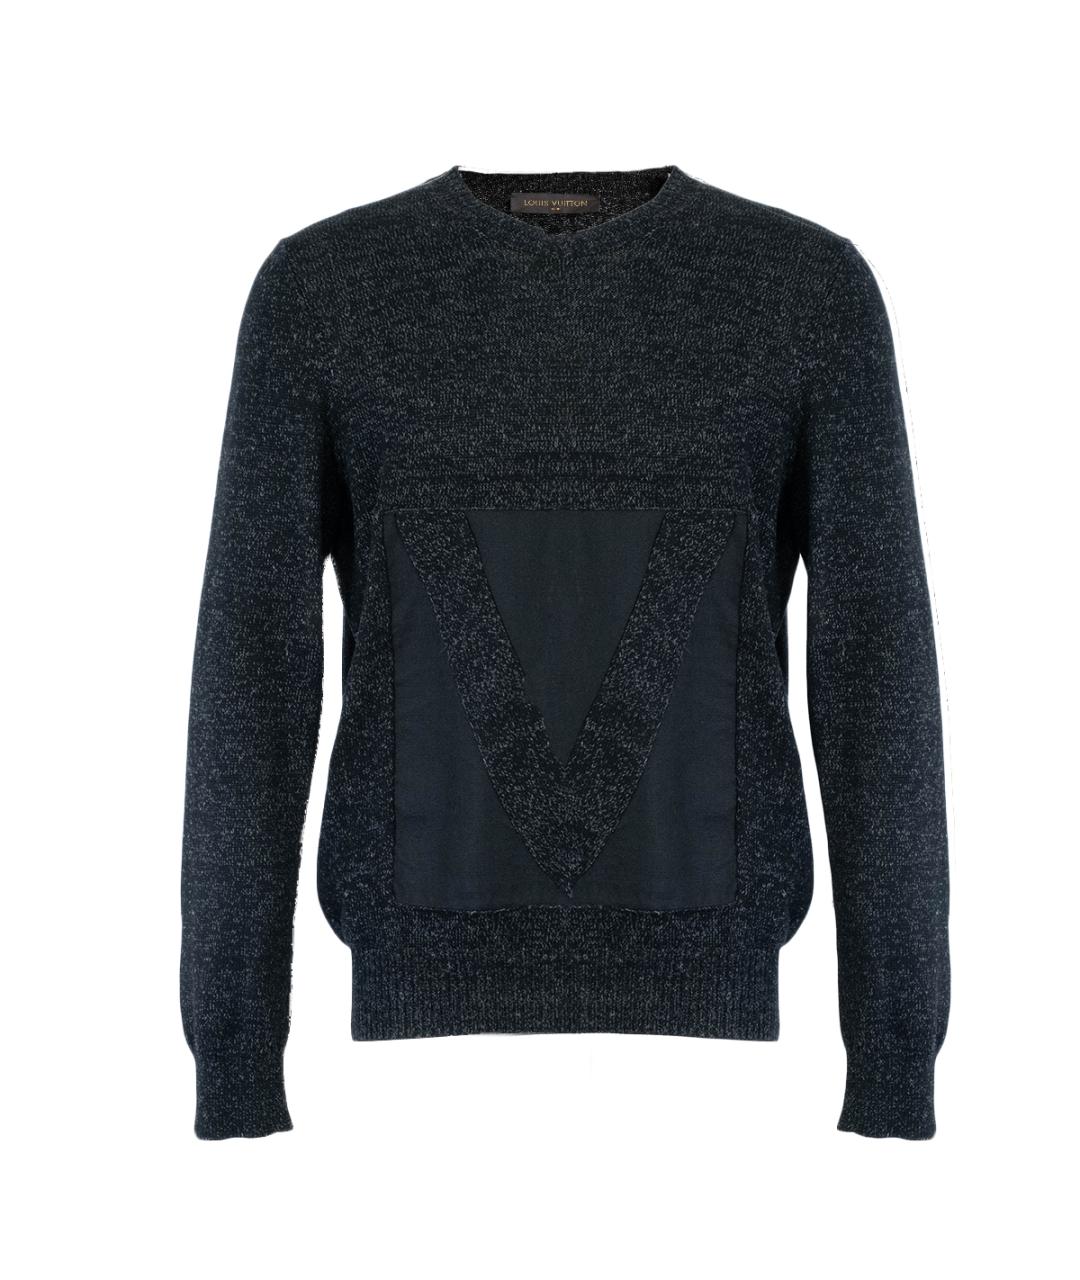 LOUIS VUITTON PRE-OWNED Черный хлопковый джемпер / свитер, фото 1